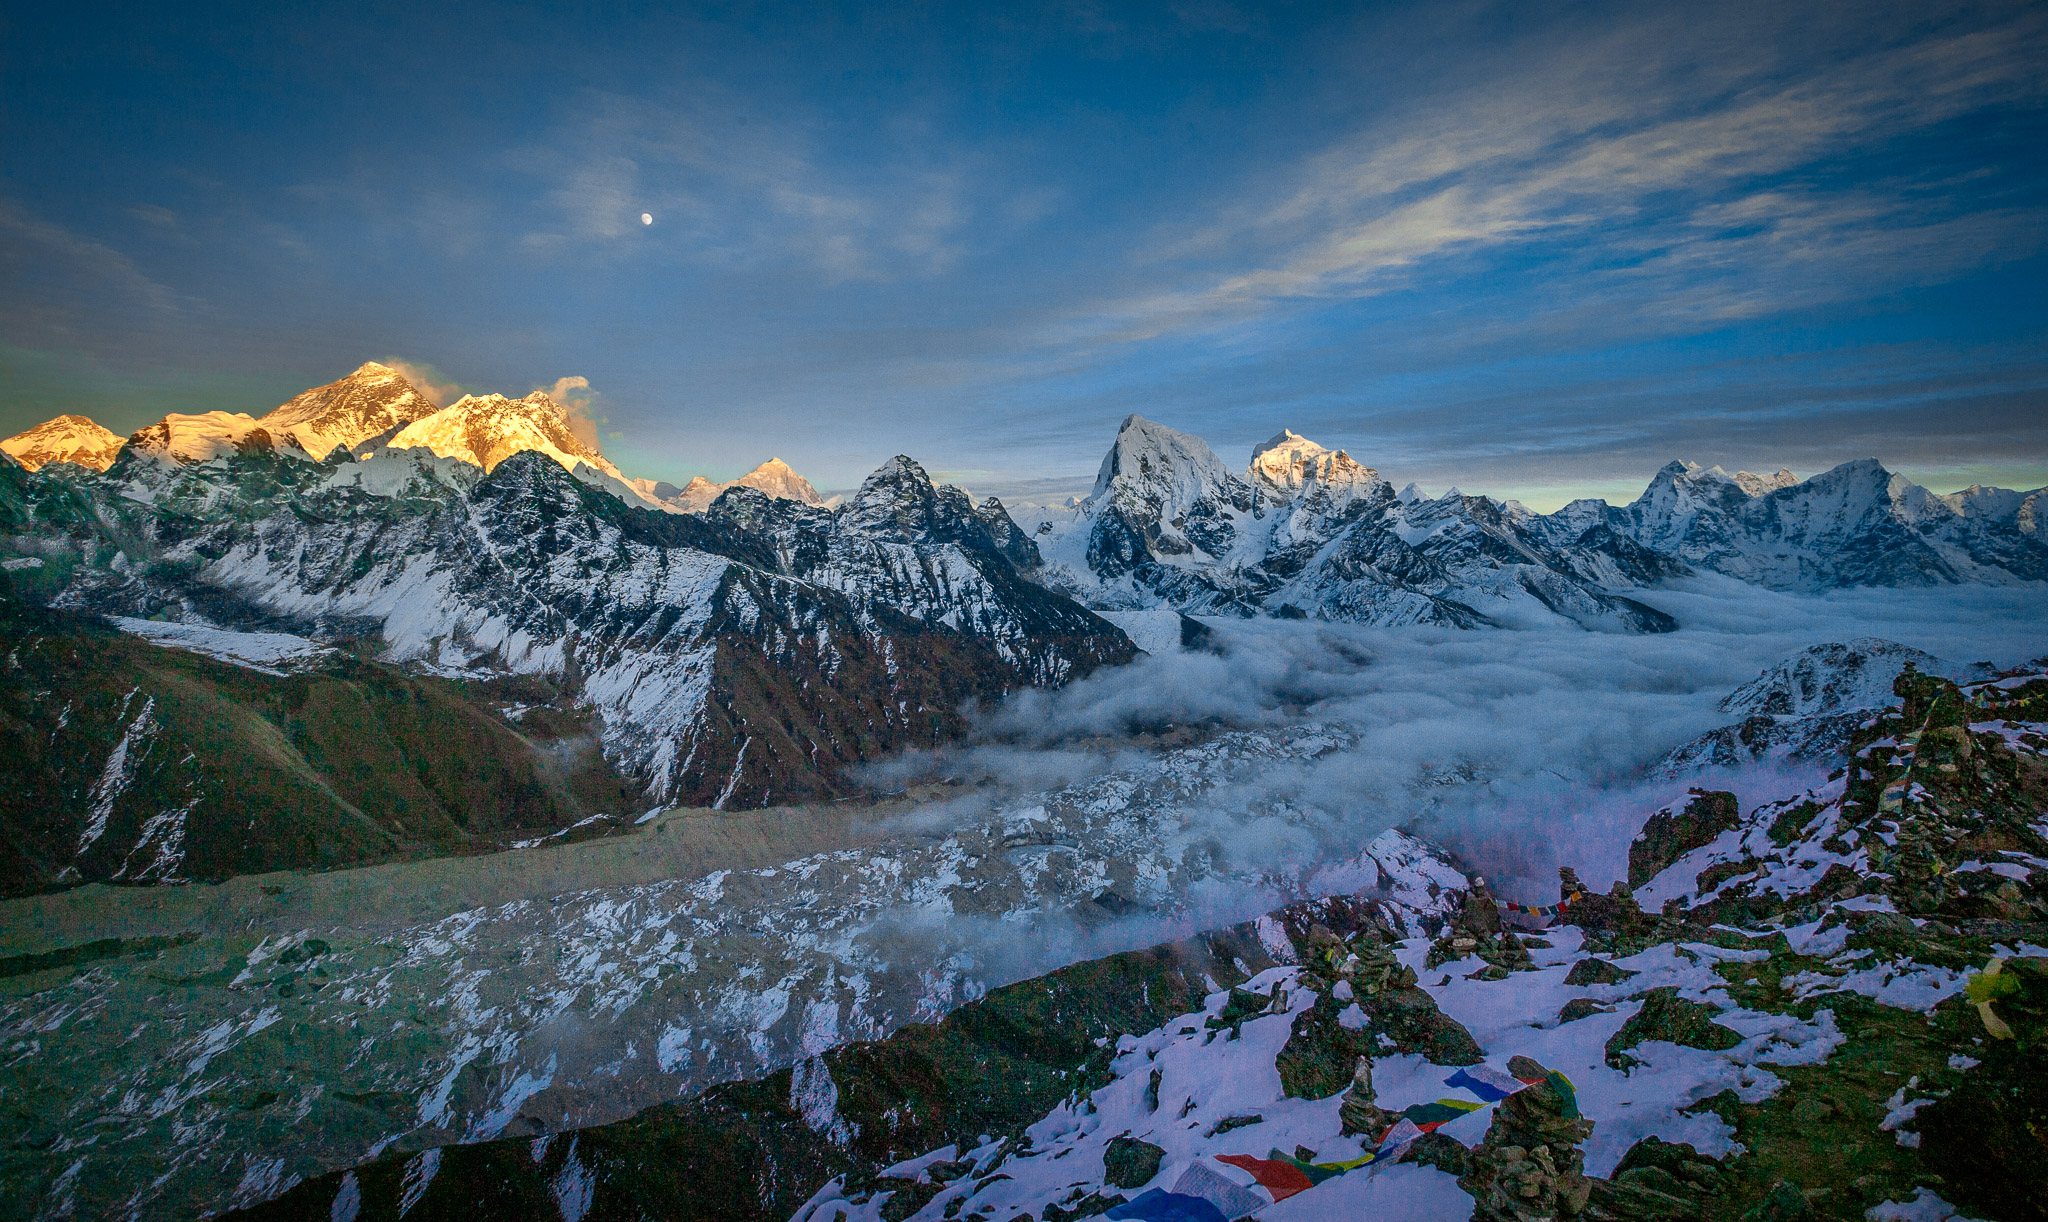 Sunset & moonrise over Everest